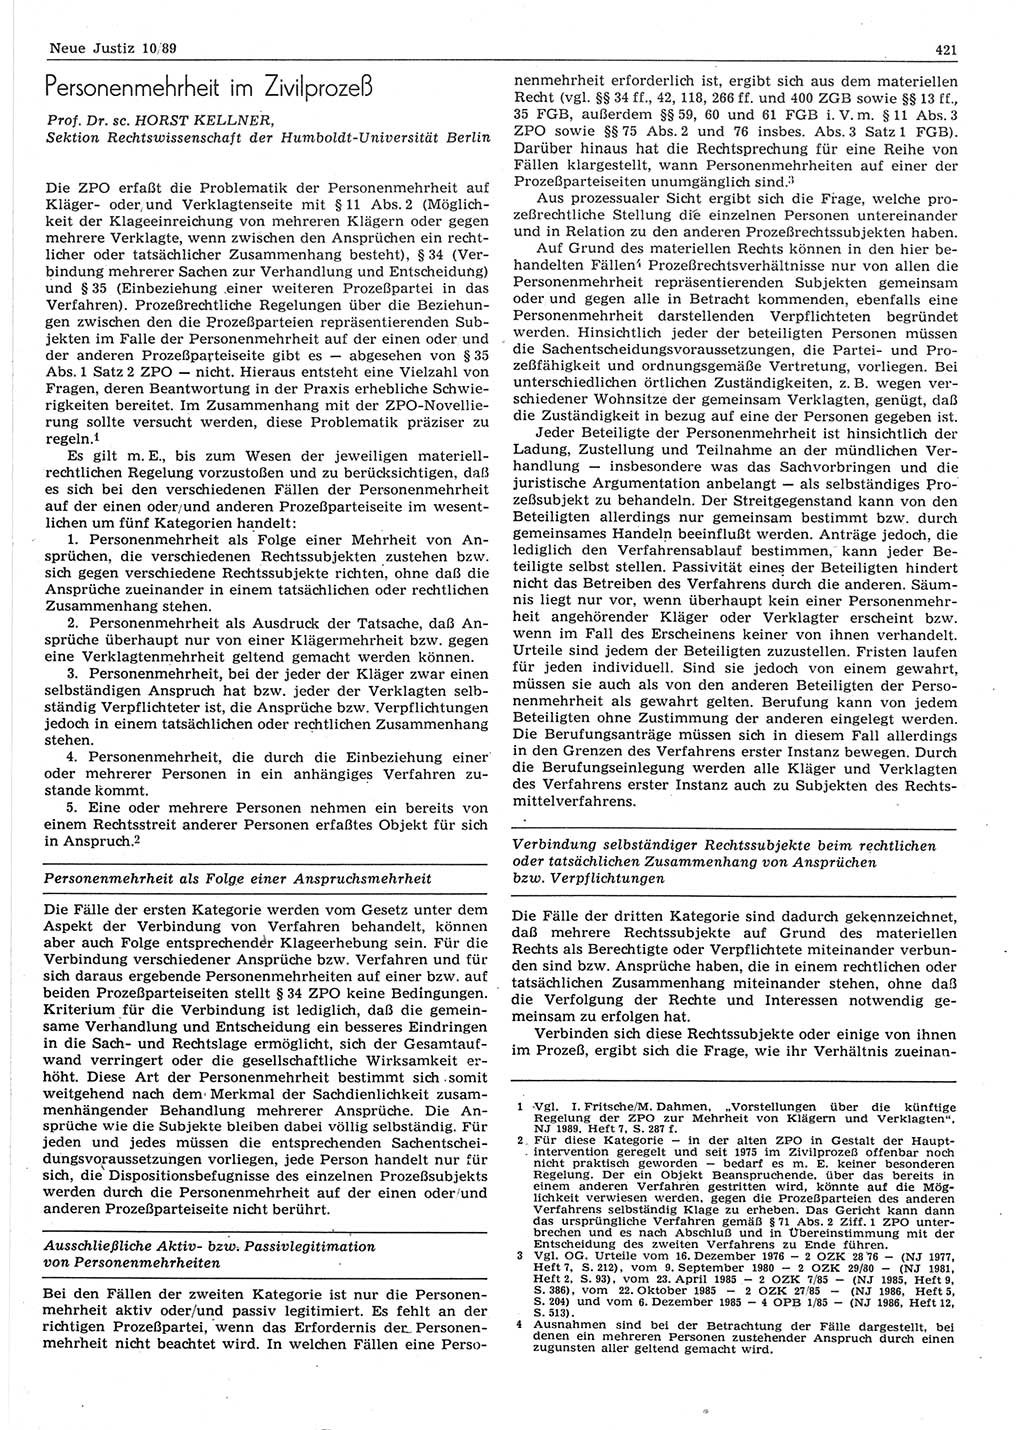 Neue Justiz (NJ), Zeitschrift für sozialistisches Recht und Gesetzlichkeit [Deutsche Demokratische Republik (DDR)], 43. Jahrgang 1989, Seite 421 (NJ DDR 1989, S. 421)